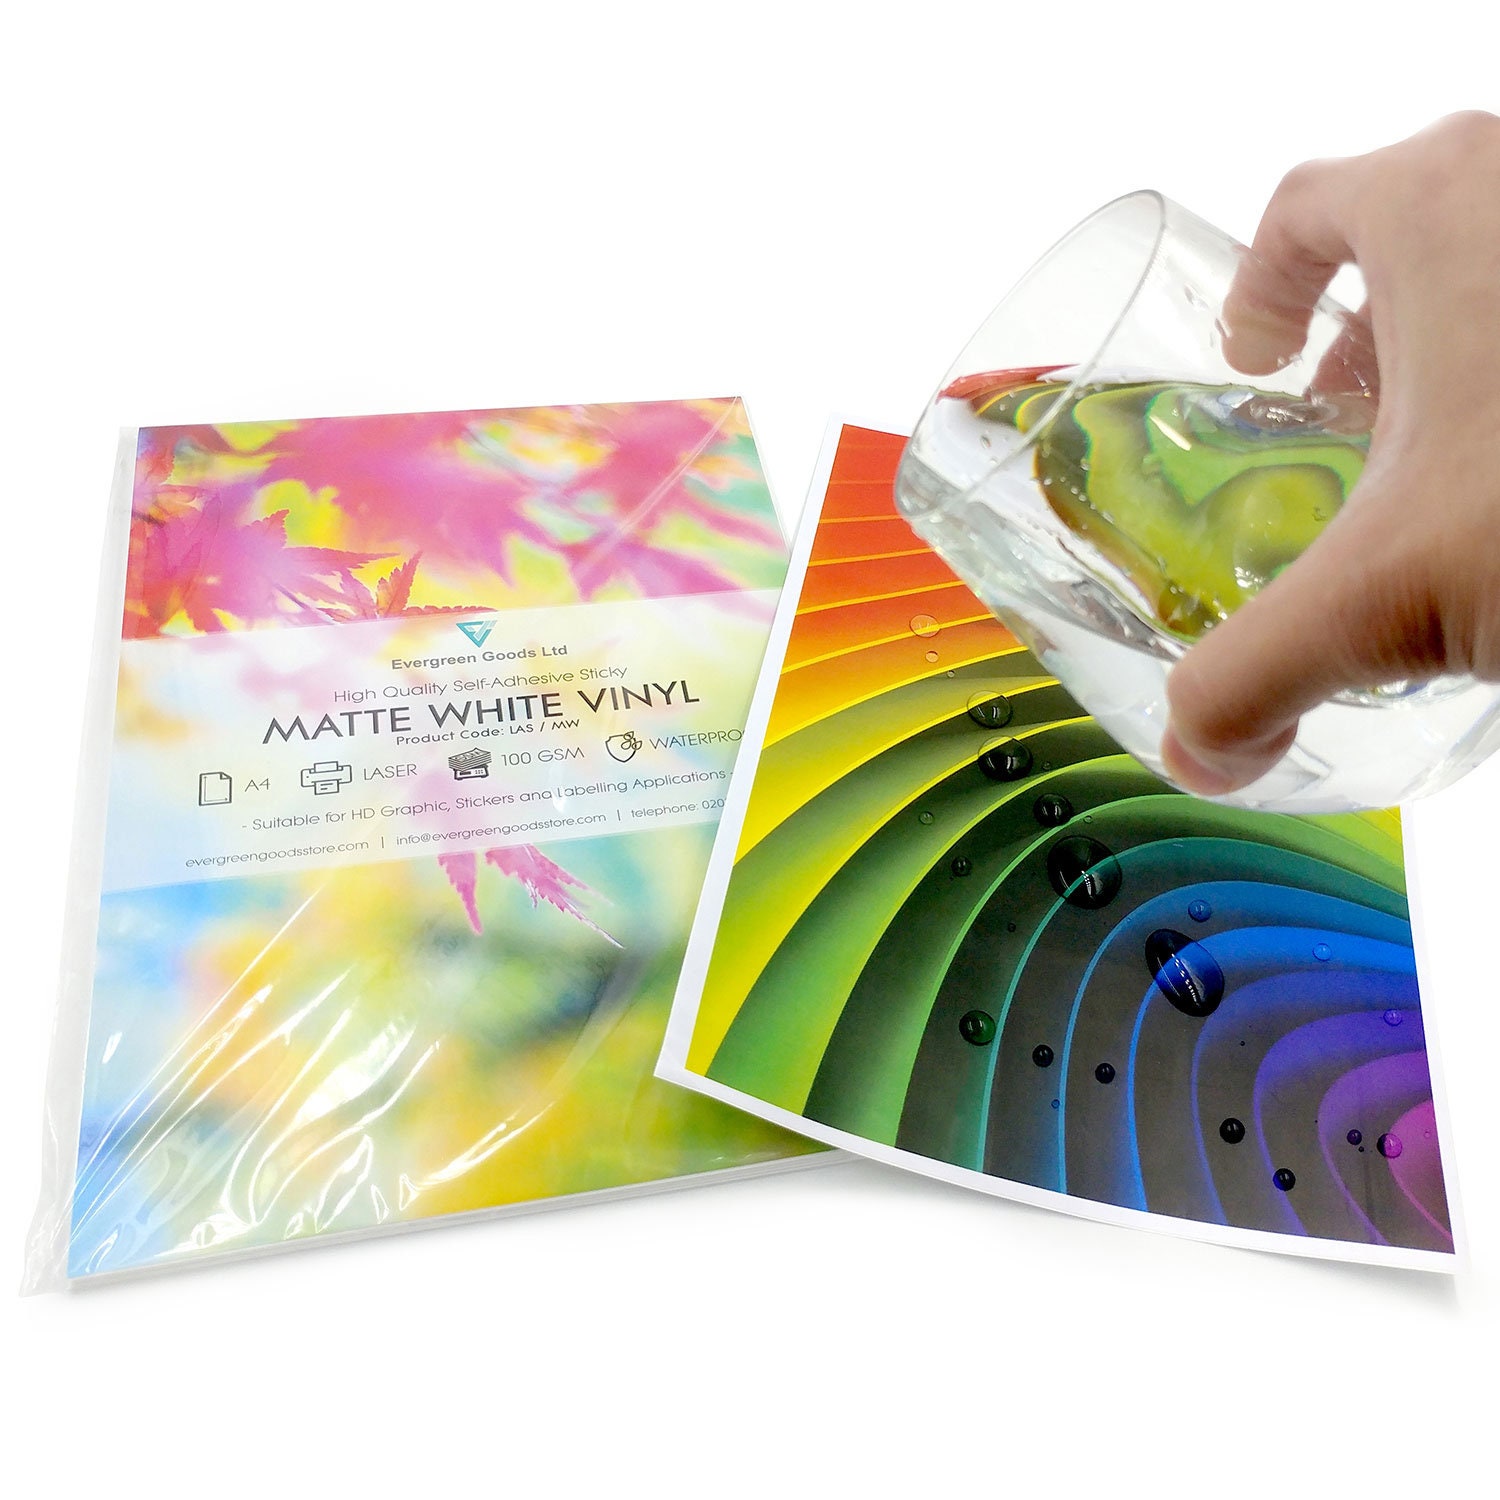 A4 Vinyl White Matt Self Adhesive Inkjet Laser Printable Sticky Packaging Labels 